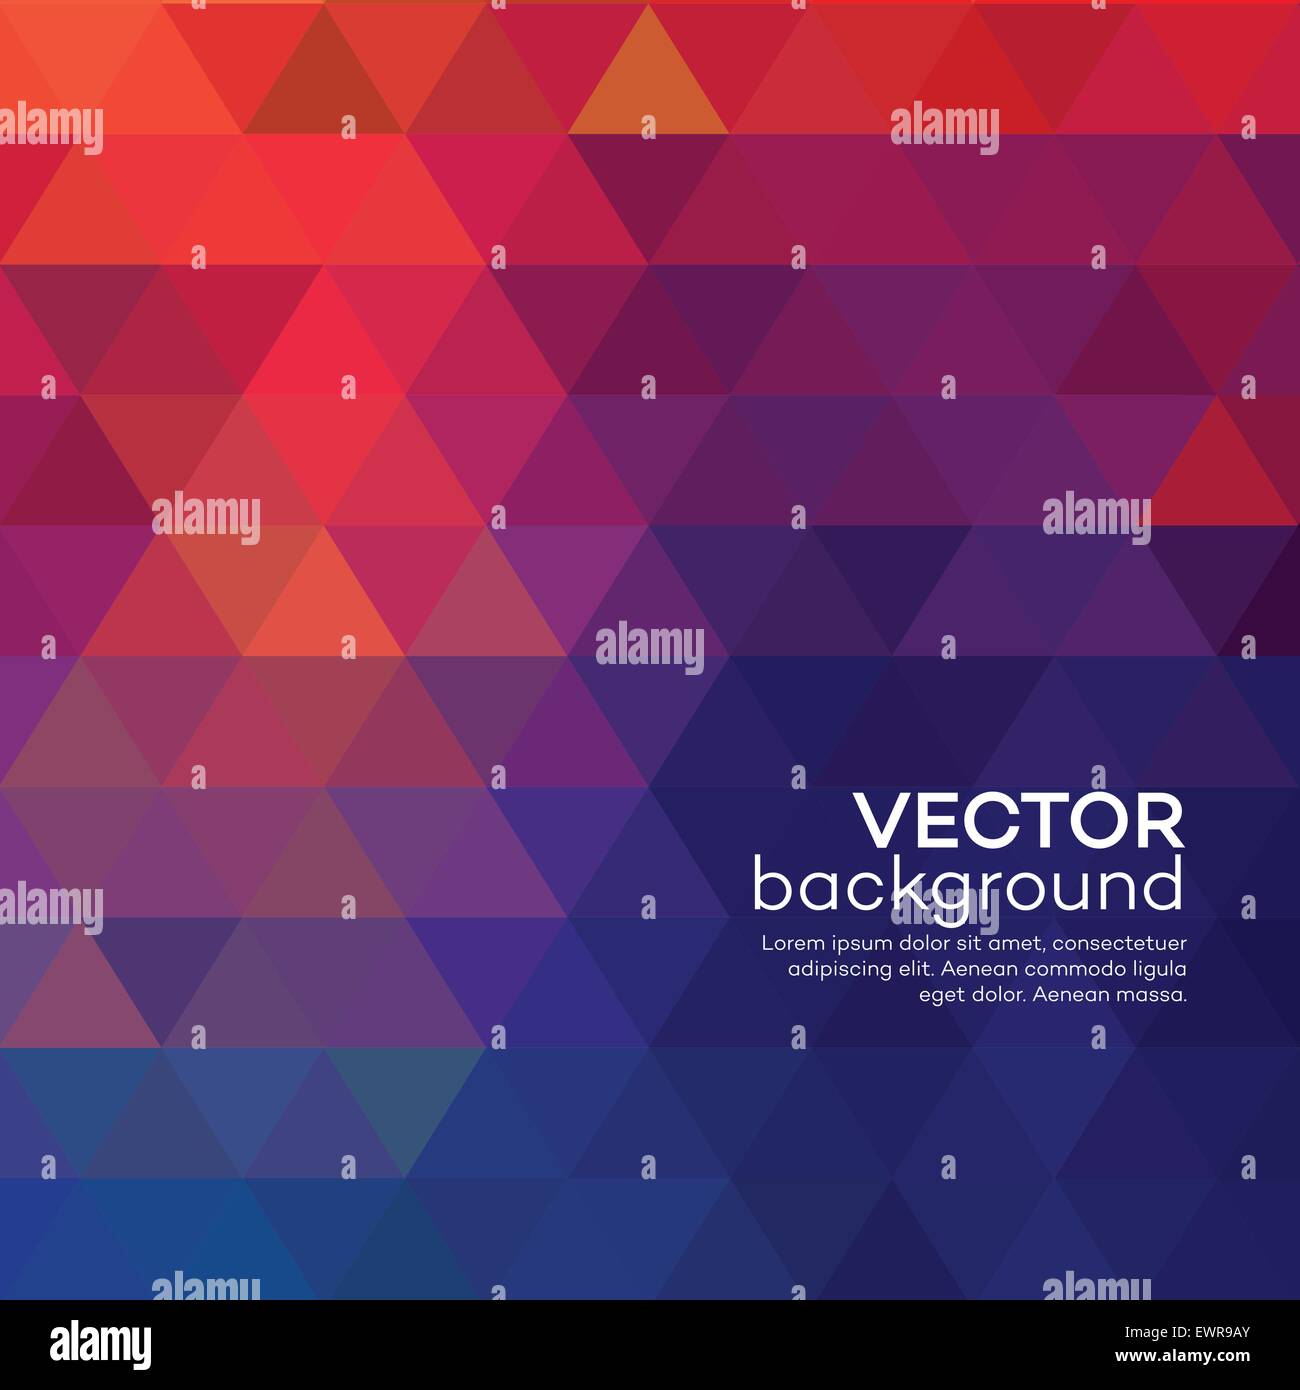 Abstrakt rot Dreieck Hintergrund. Vektor-illustration Stock Vektor